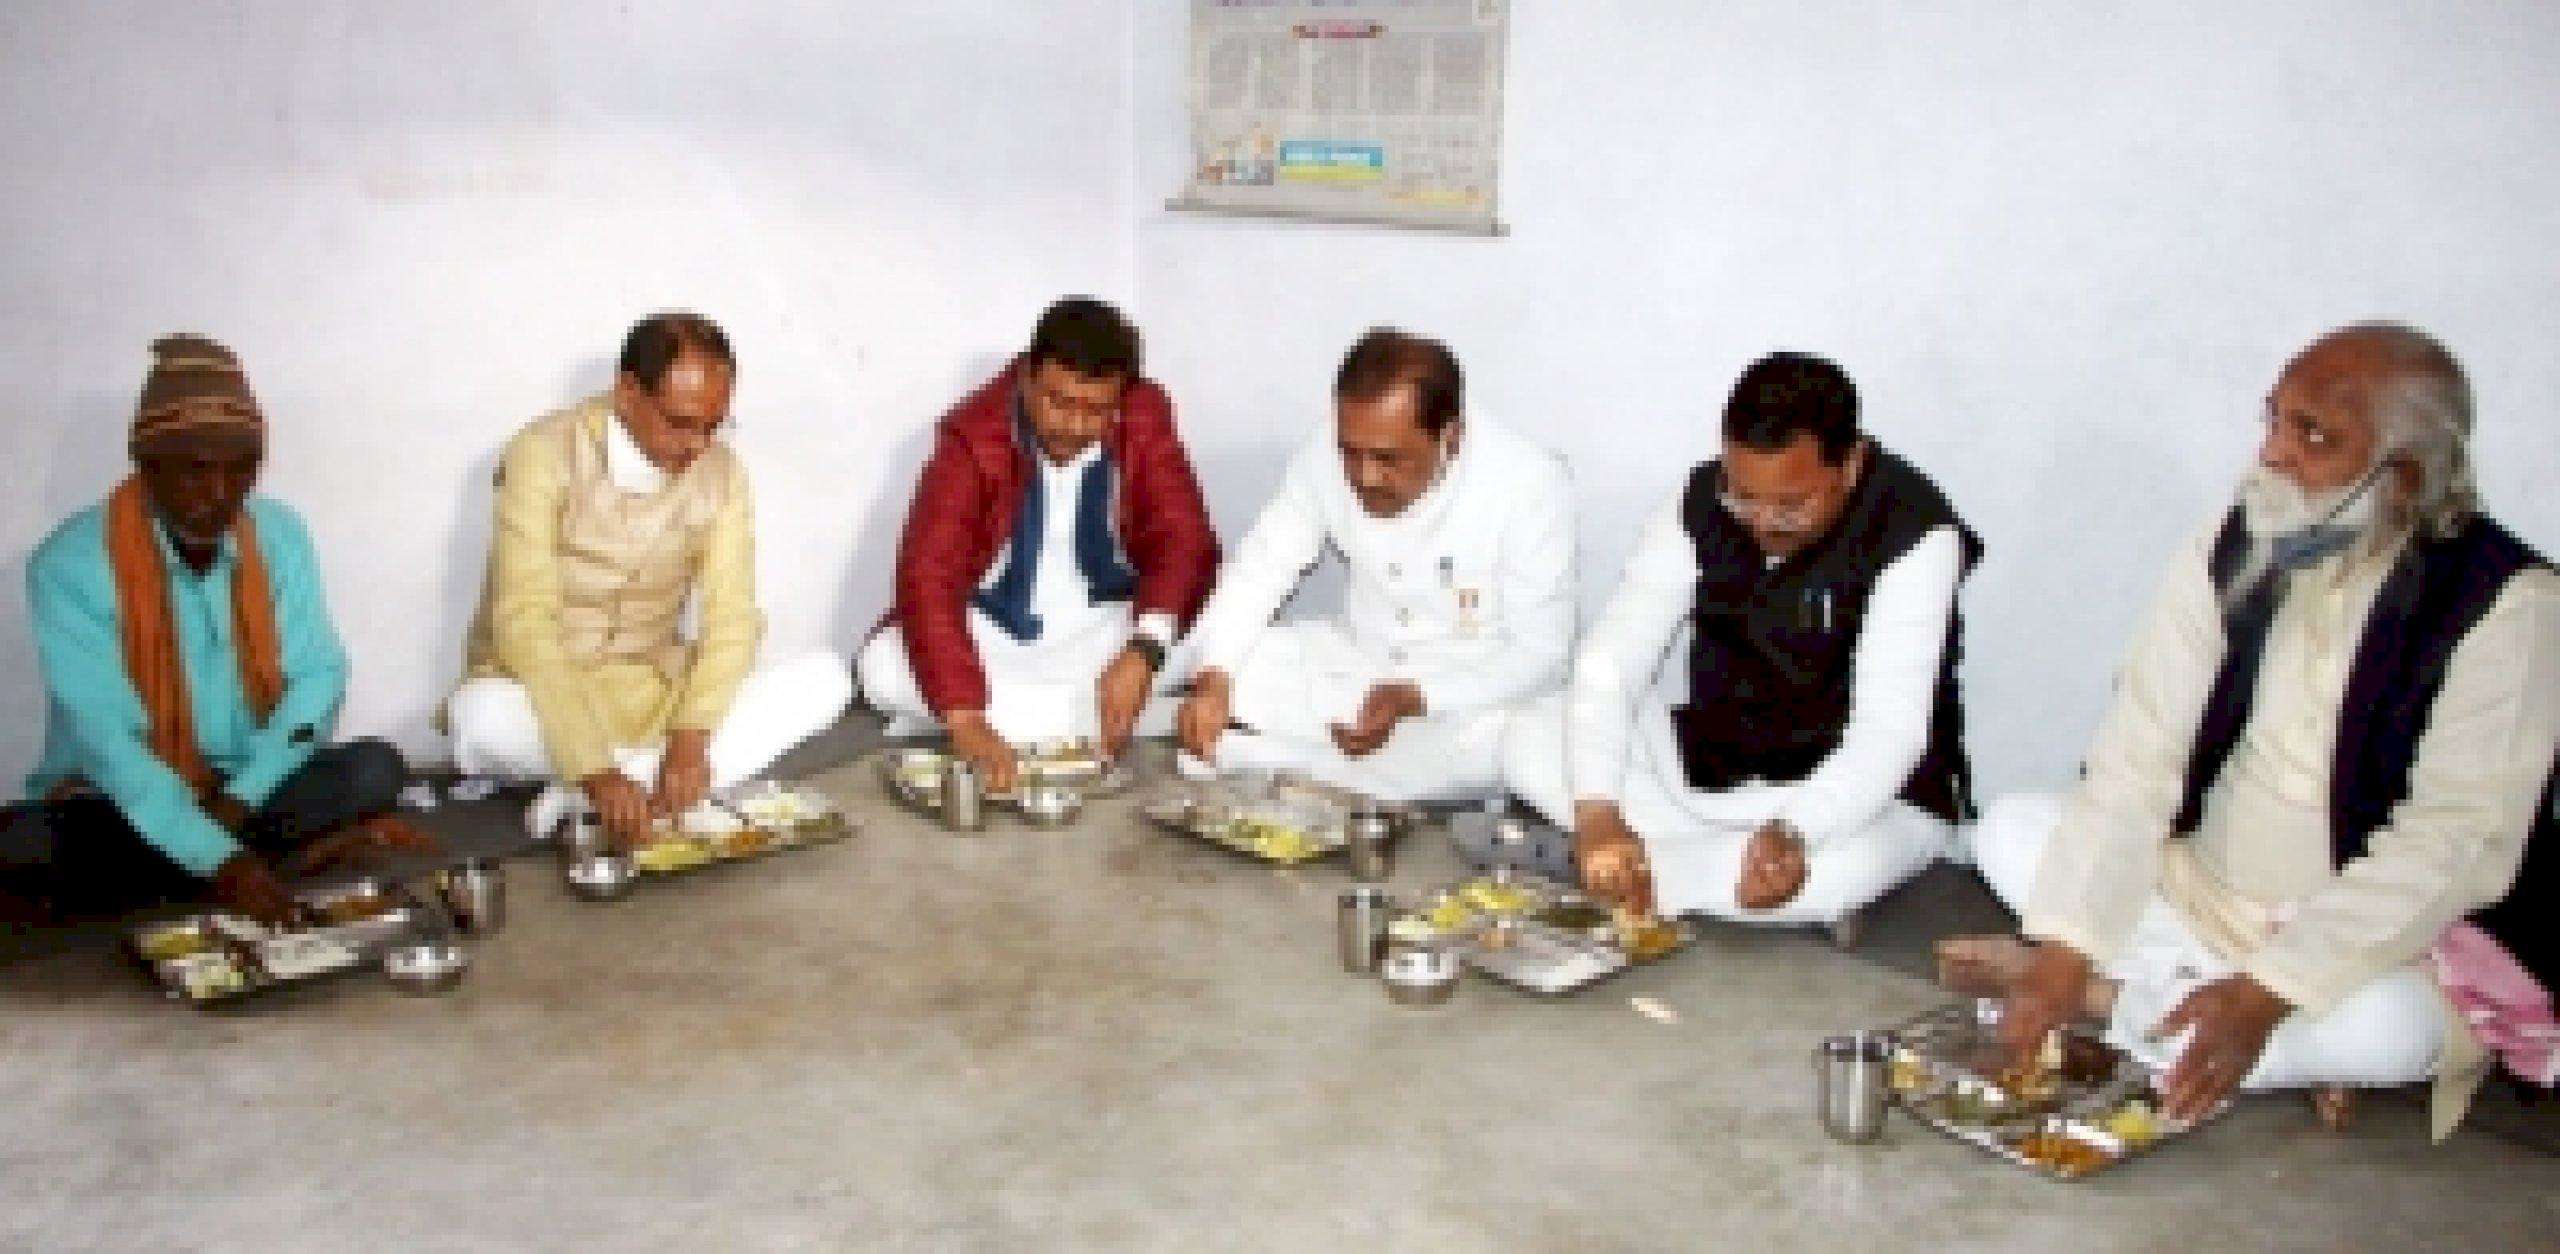 Shivraj ने प्रधानमंत्री आवास के लाभार्थी के घर खाया खाना